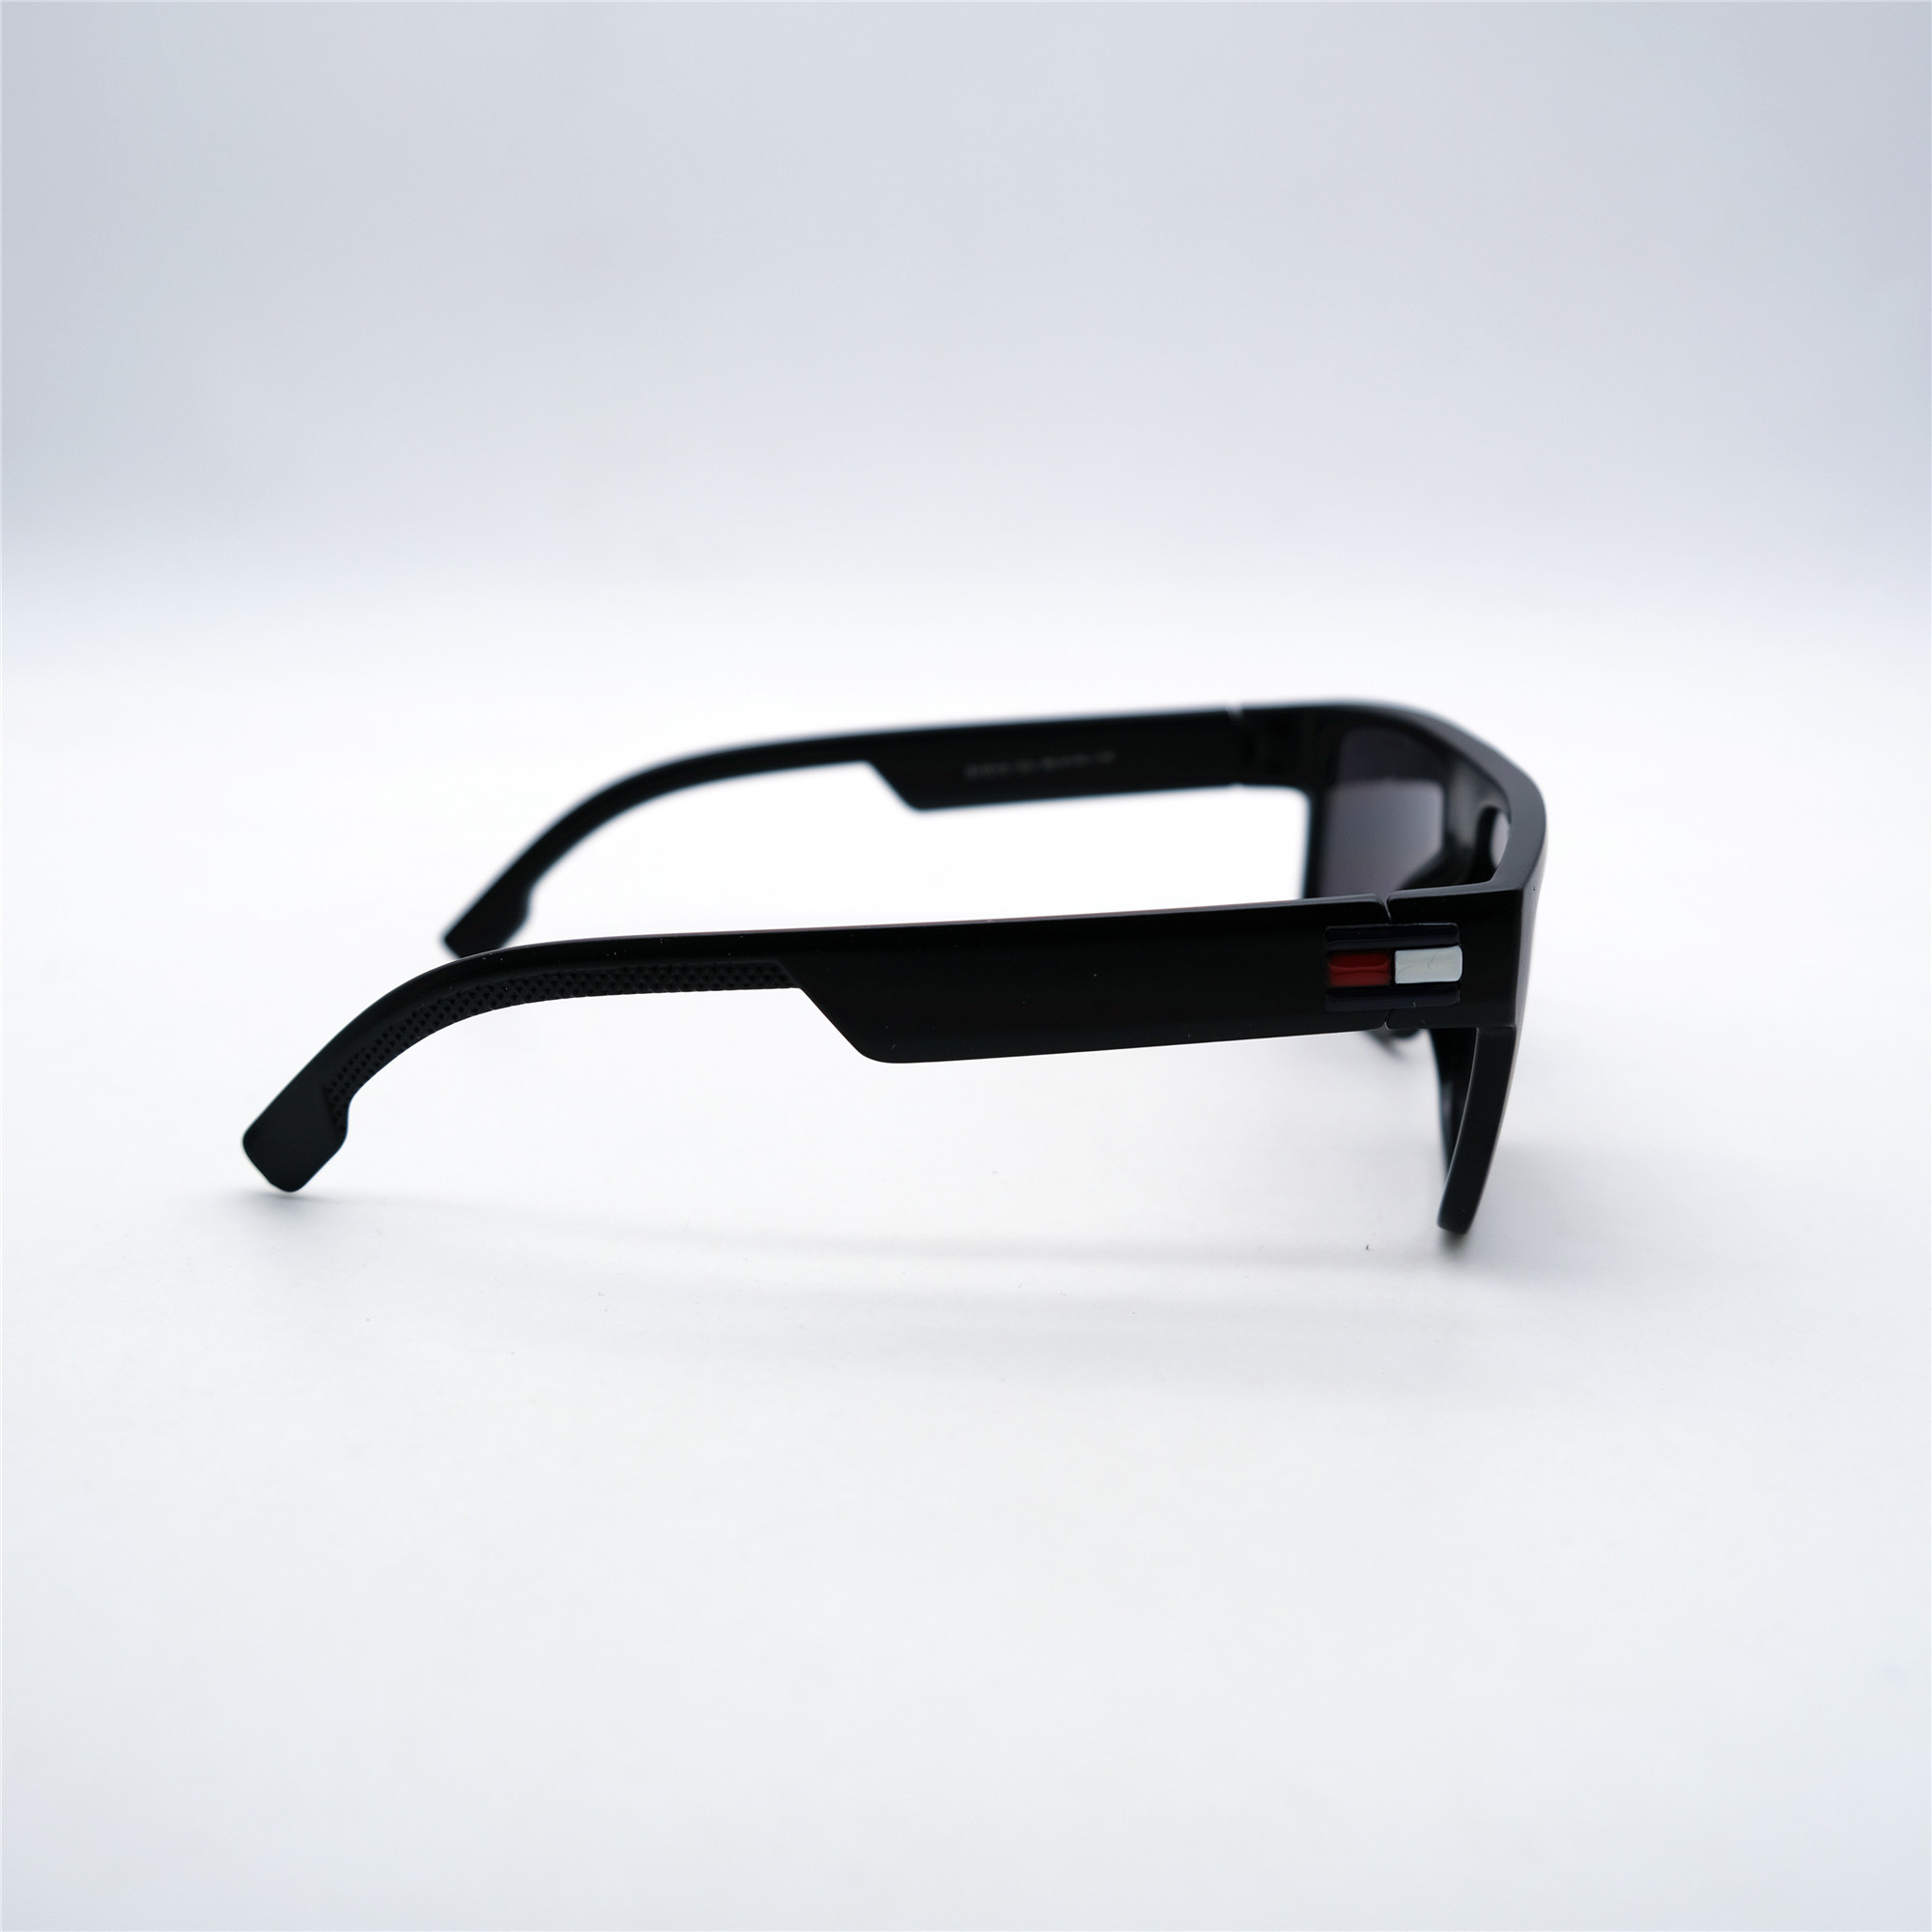  Солнцезащитные очки картинка Мужские Decorozza  Квадратные D1012-3 